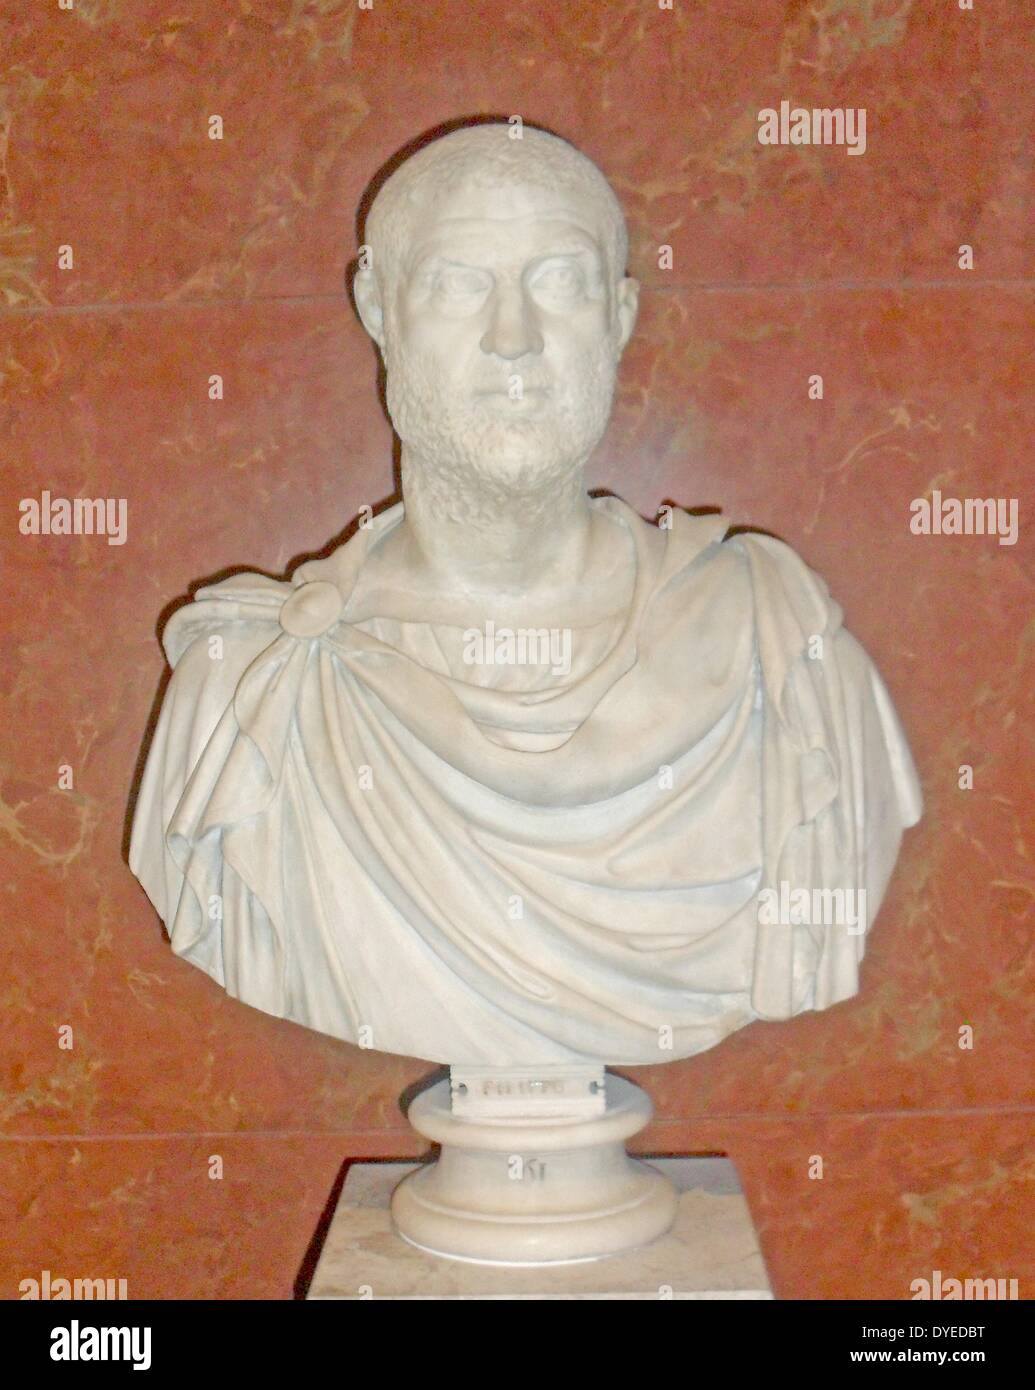 Busto di un leader civico. Questo ritratto è considerato da alcuni una somiglianza dell'Imperatore Maximin 235-245 d.c. scultura in marmo Foto Stock